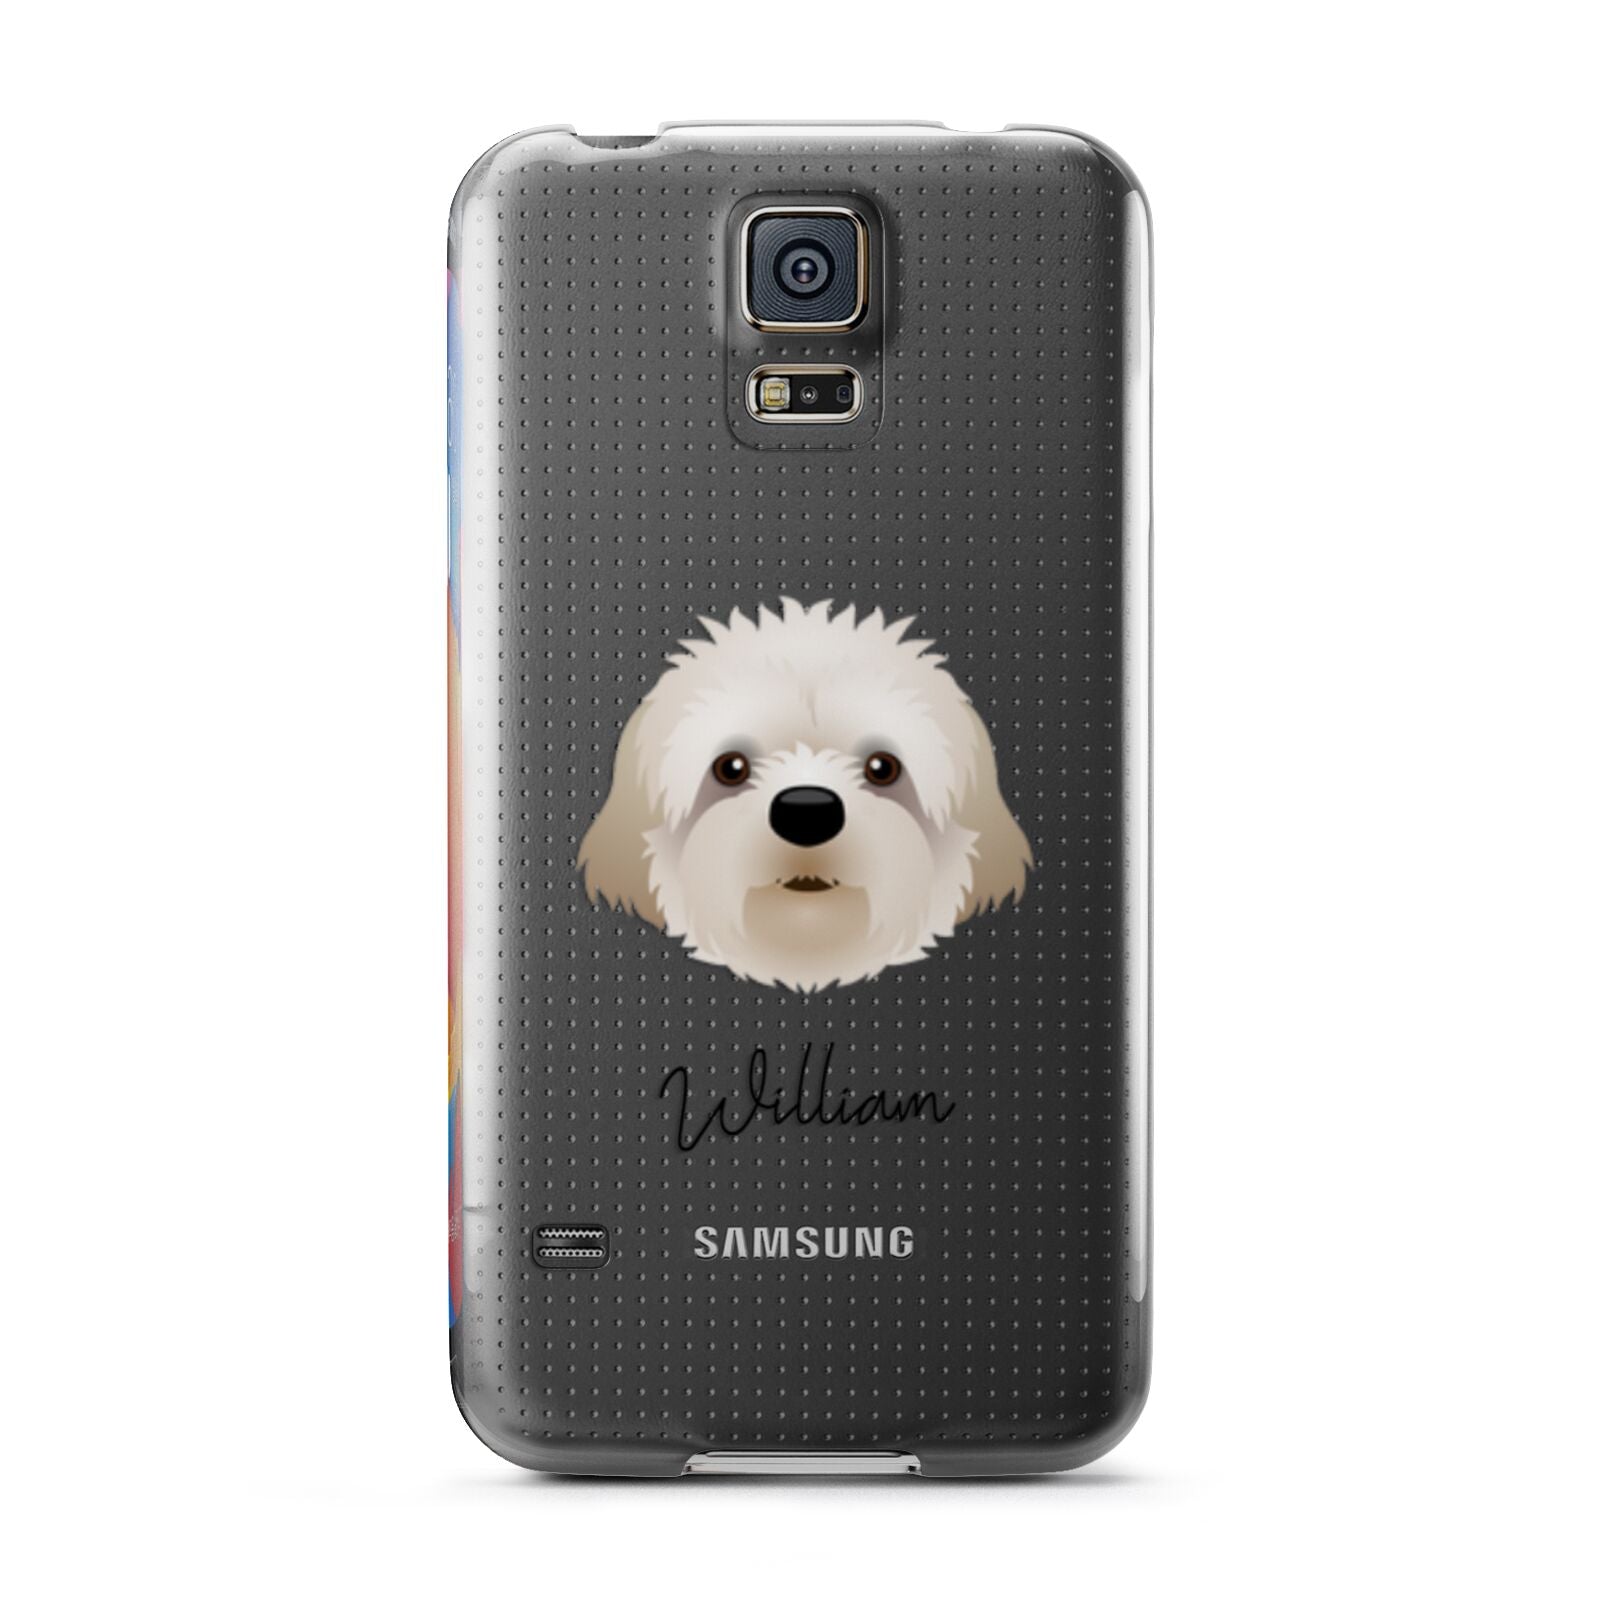 Cavapoochon Personalised Samsung Galaxy S5 Case